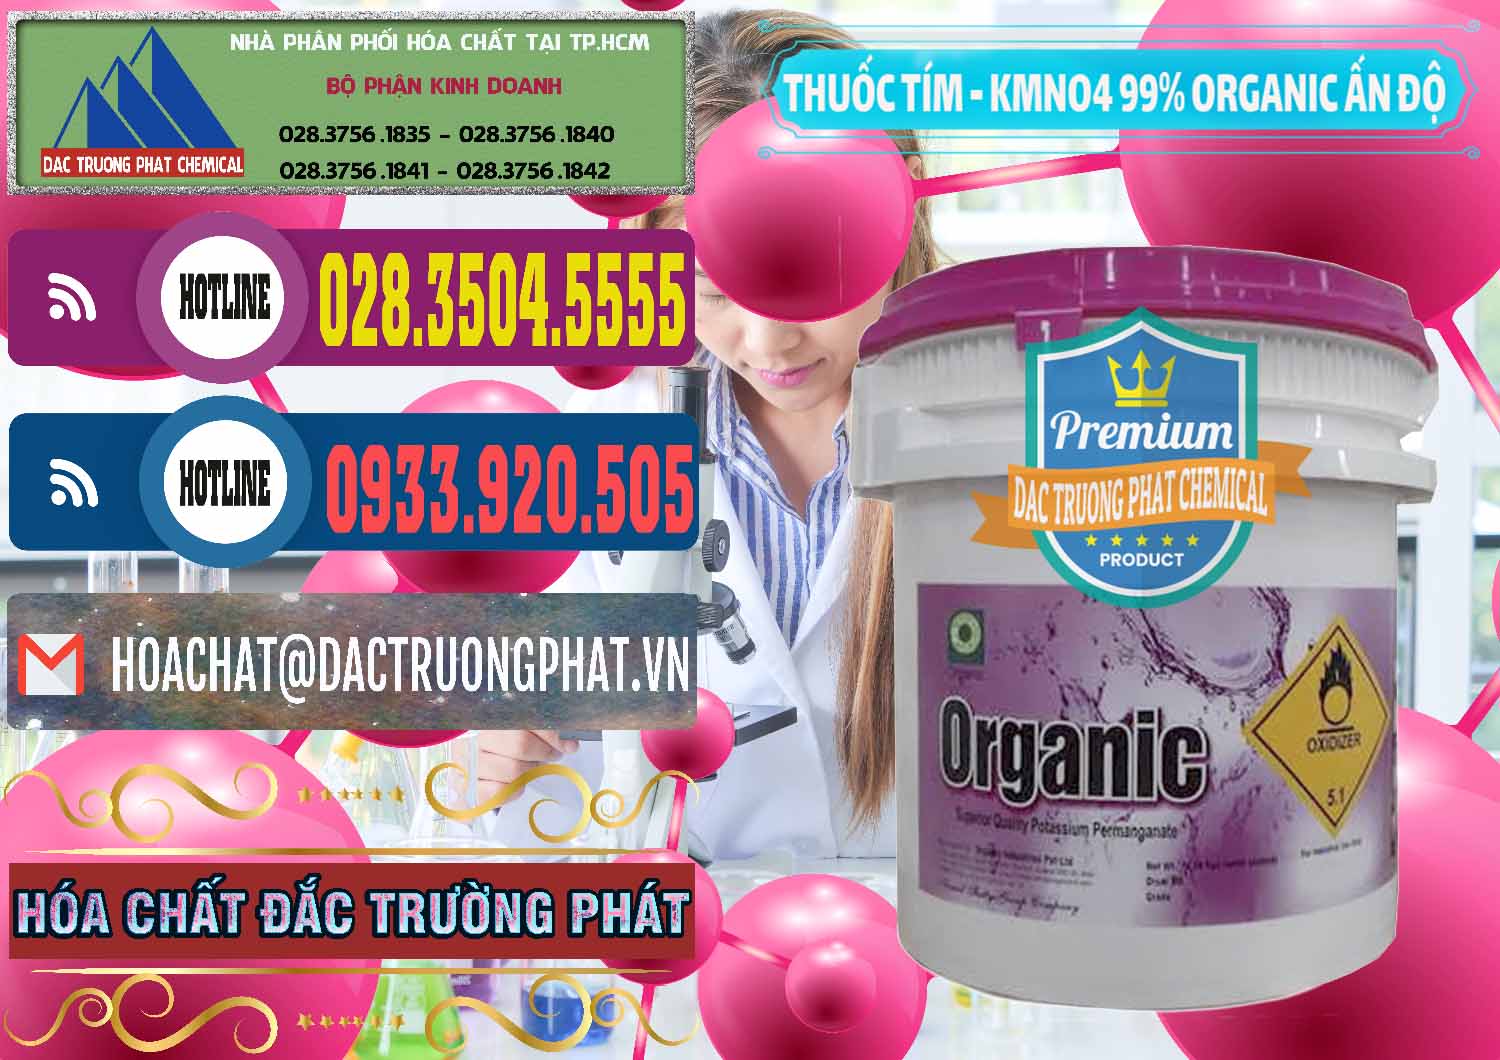 Cung ứng & bán Thuốc Tím - KMNO4 99% Organic Ấn Độ India - 0216 - Nơi chuyên cung cấp - kinh doanh hóa chất tại TP.HCM - muabanhoachat.com.vn